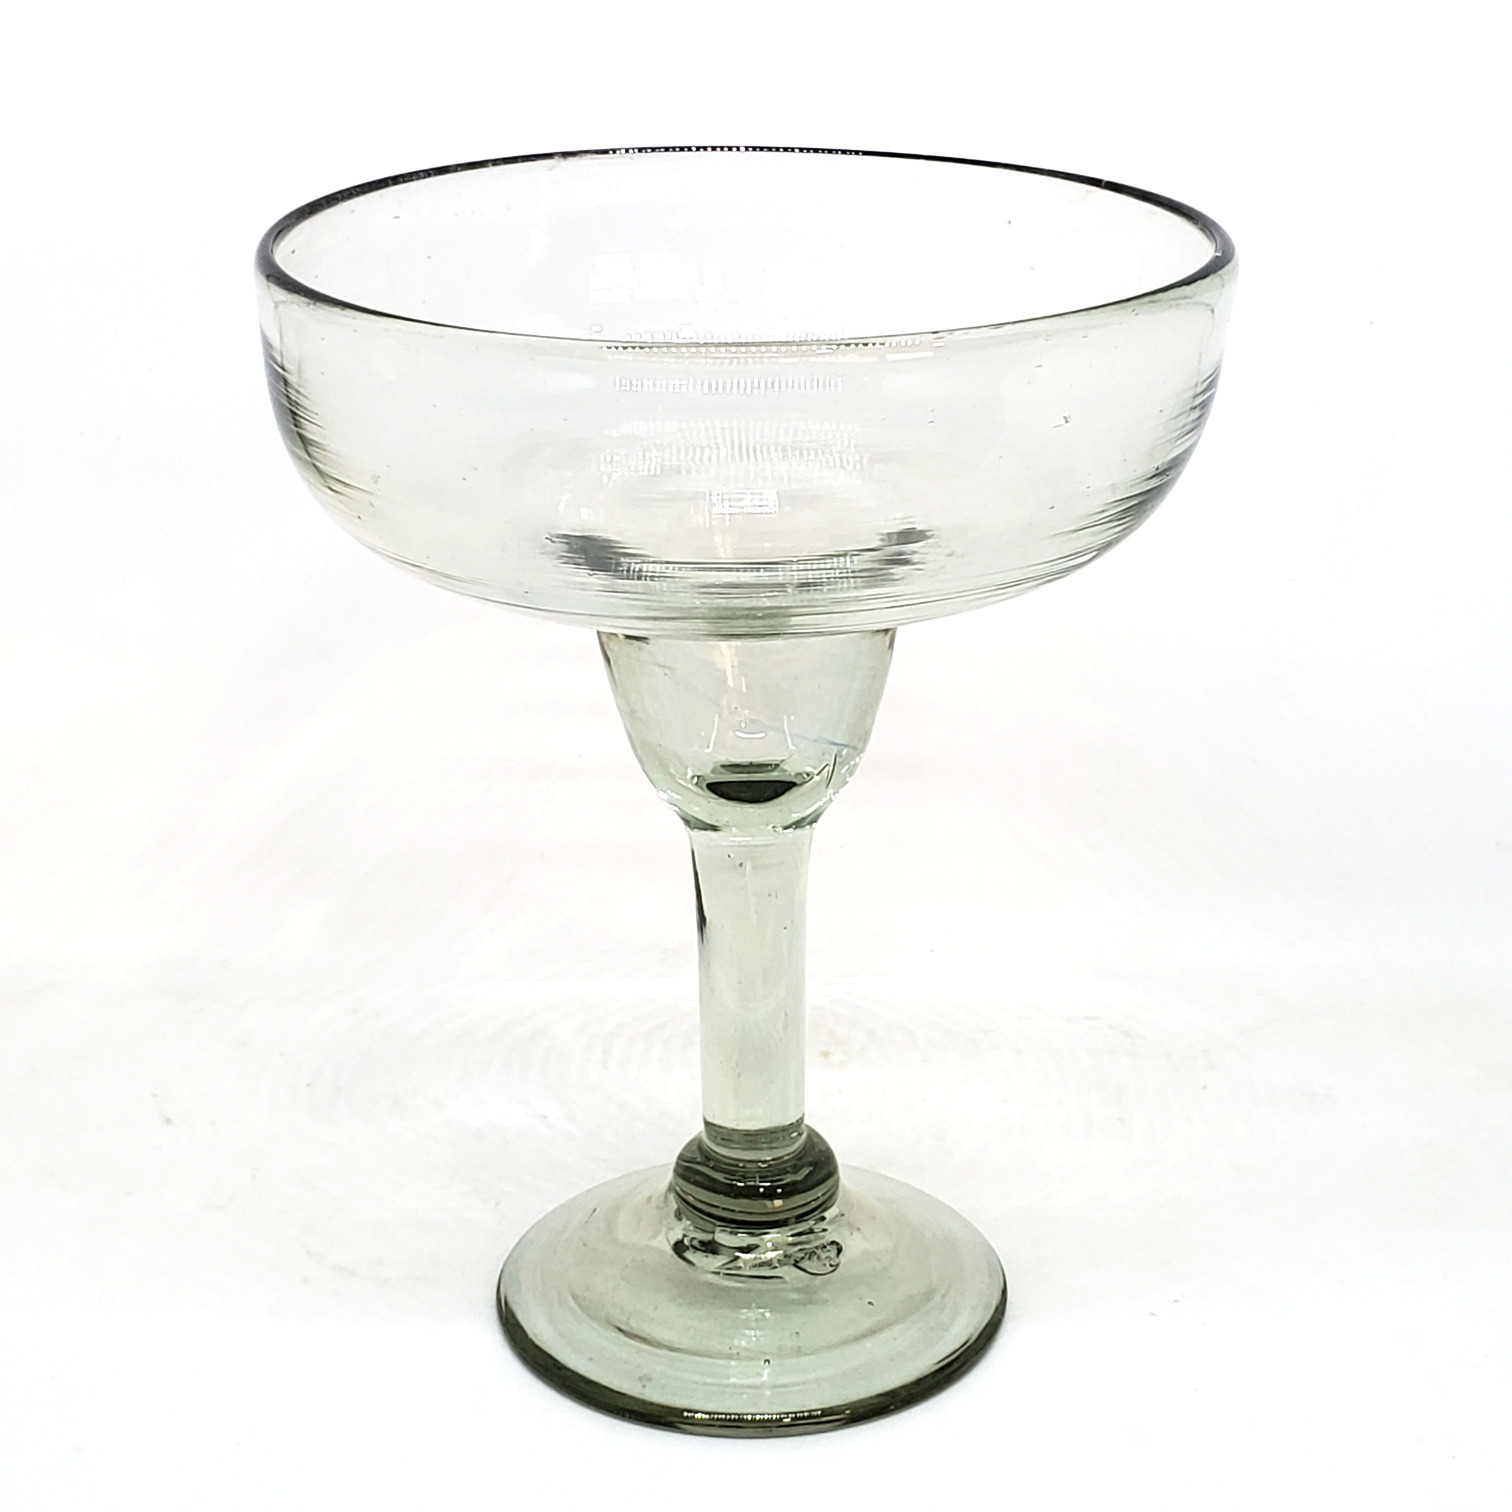 Novedades / Copa Margarita Grande 14 oz Transparente (Juego de 6) / Para cualquier fanático de las margaritas, éste juego de copas de vidrio soplado resaltarán en su mesa.